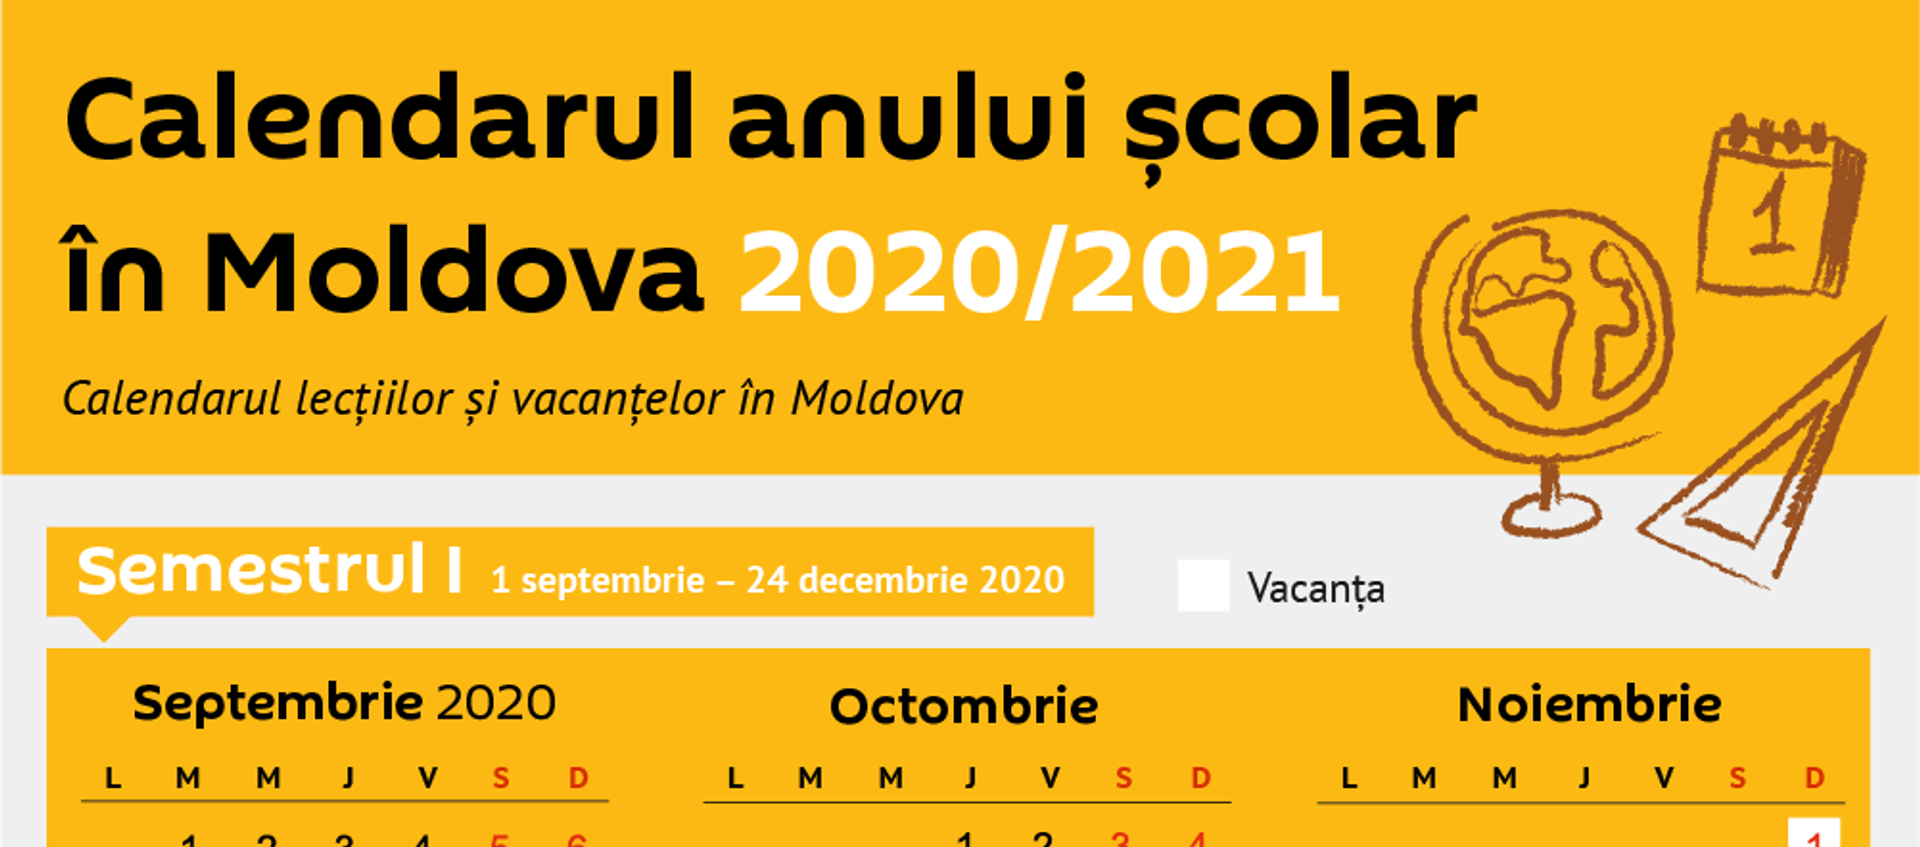 Calendarul anului școlar în Moldova 2020/2021 - Sputnik Moldova, 1920, 22.05.2020